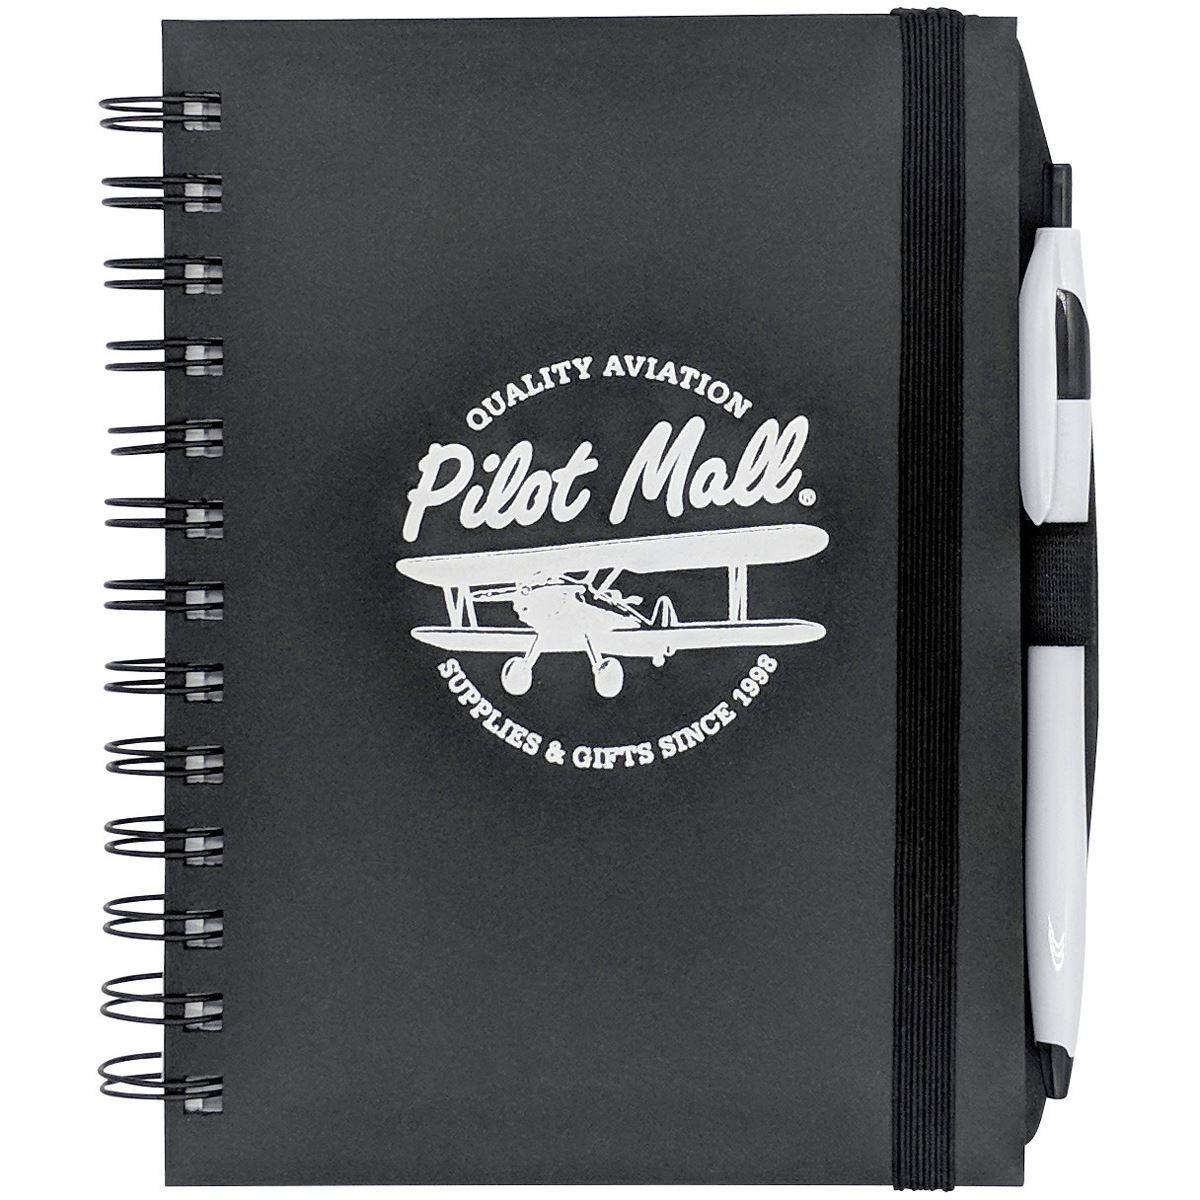 PilotMall.com Hard Cover Journal & Pen - PilotMall.com